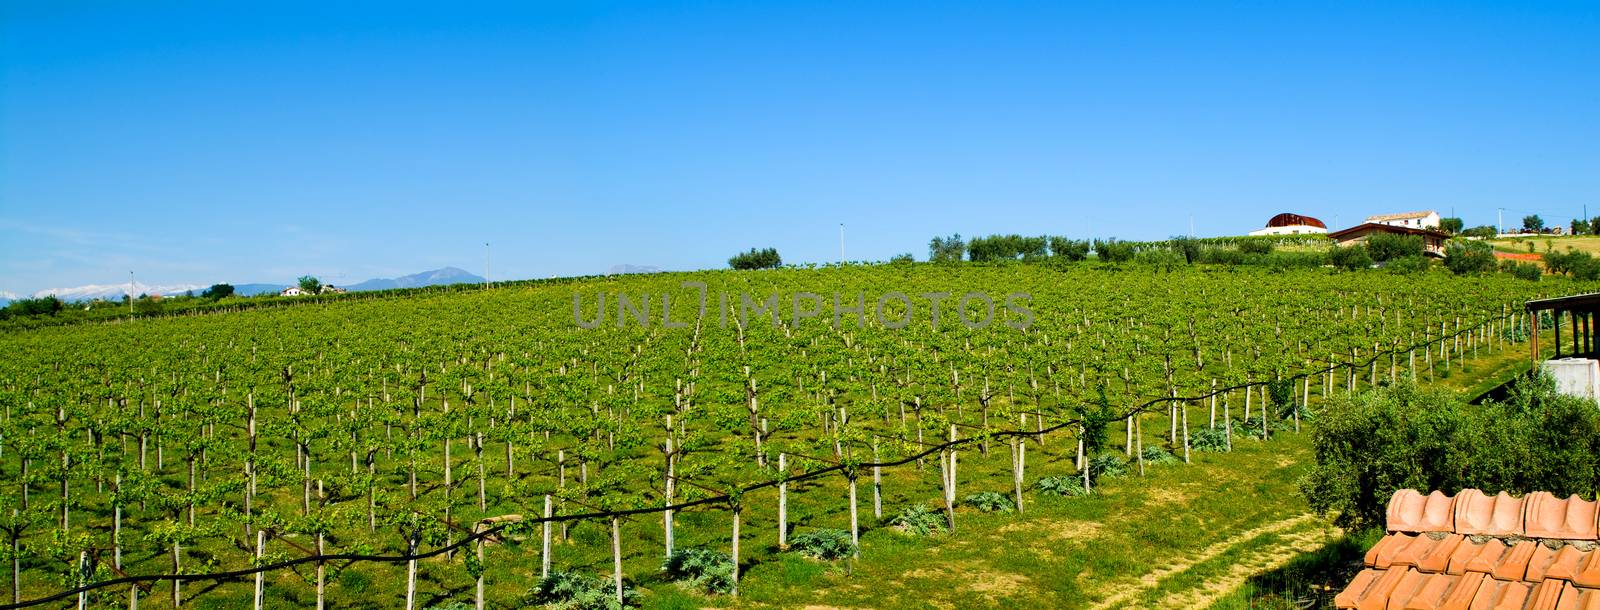 vineyard by pixphotos